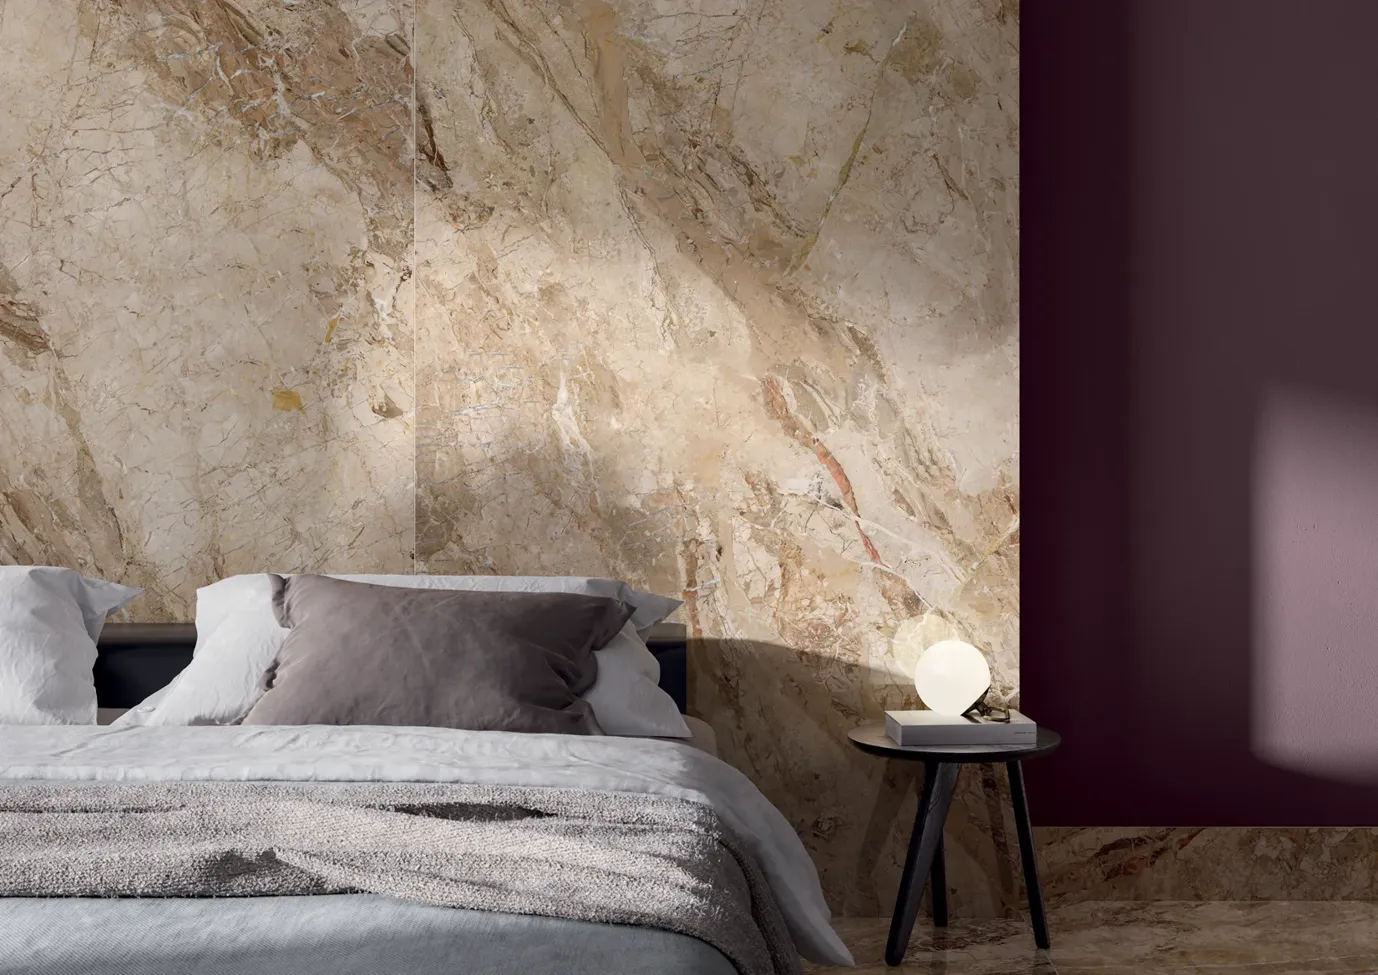 Camera da letto contemporanea con pavimenti e parete dietro il letto effetto marmo beige, arredamento minimalista e poltrona accentata vivace.